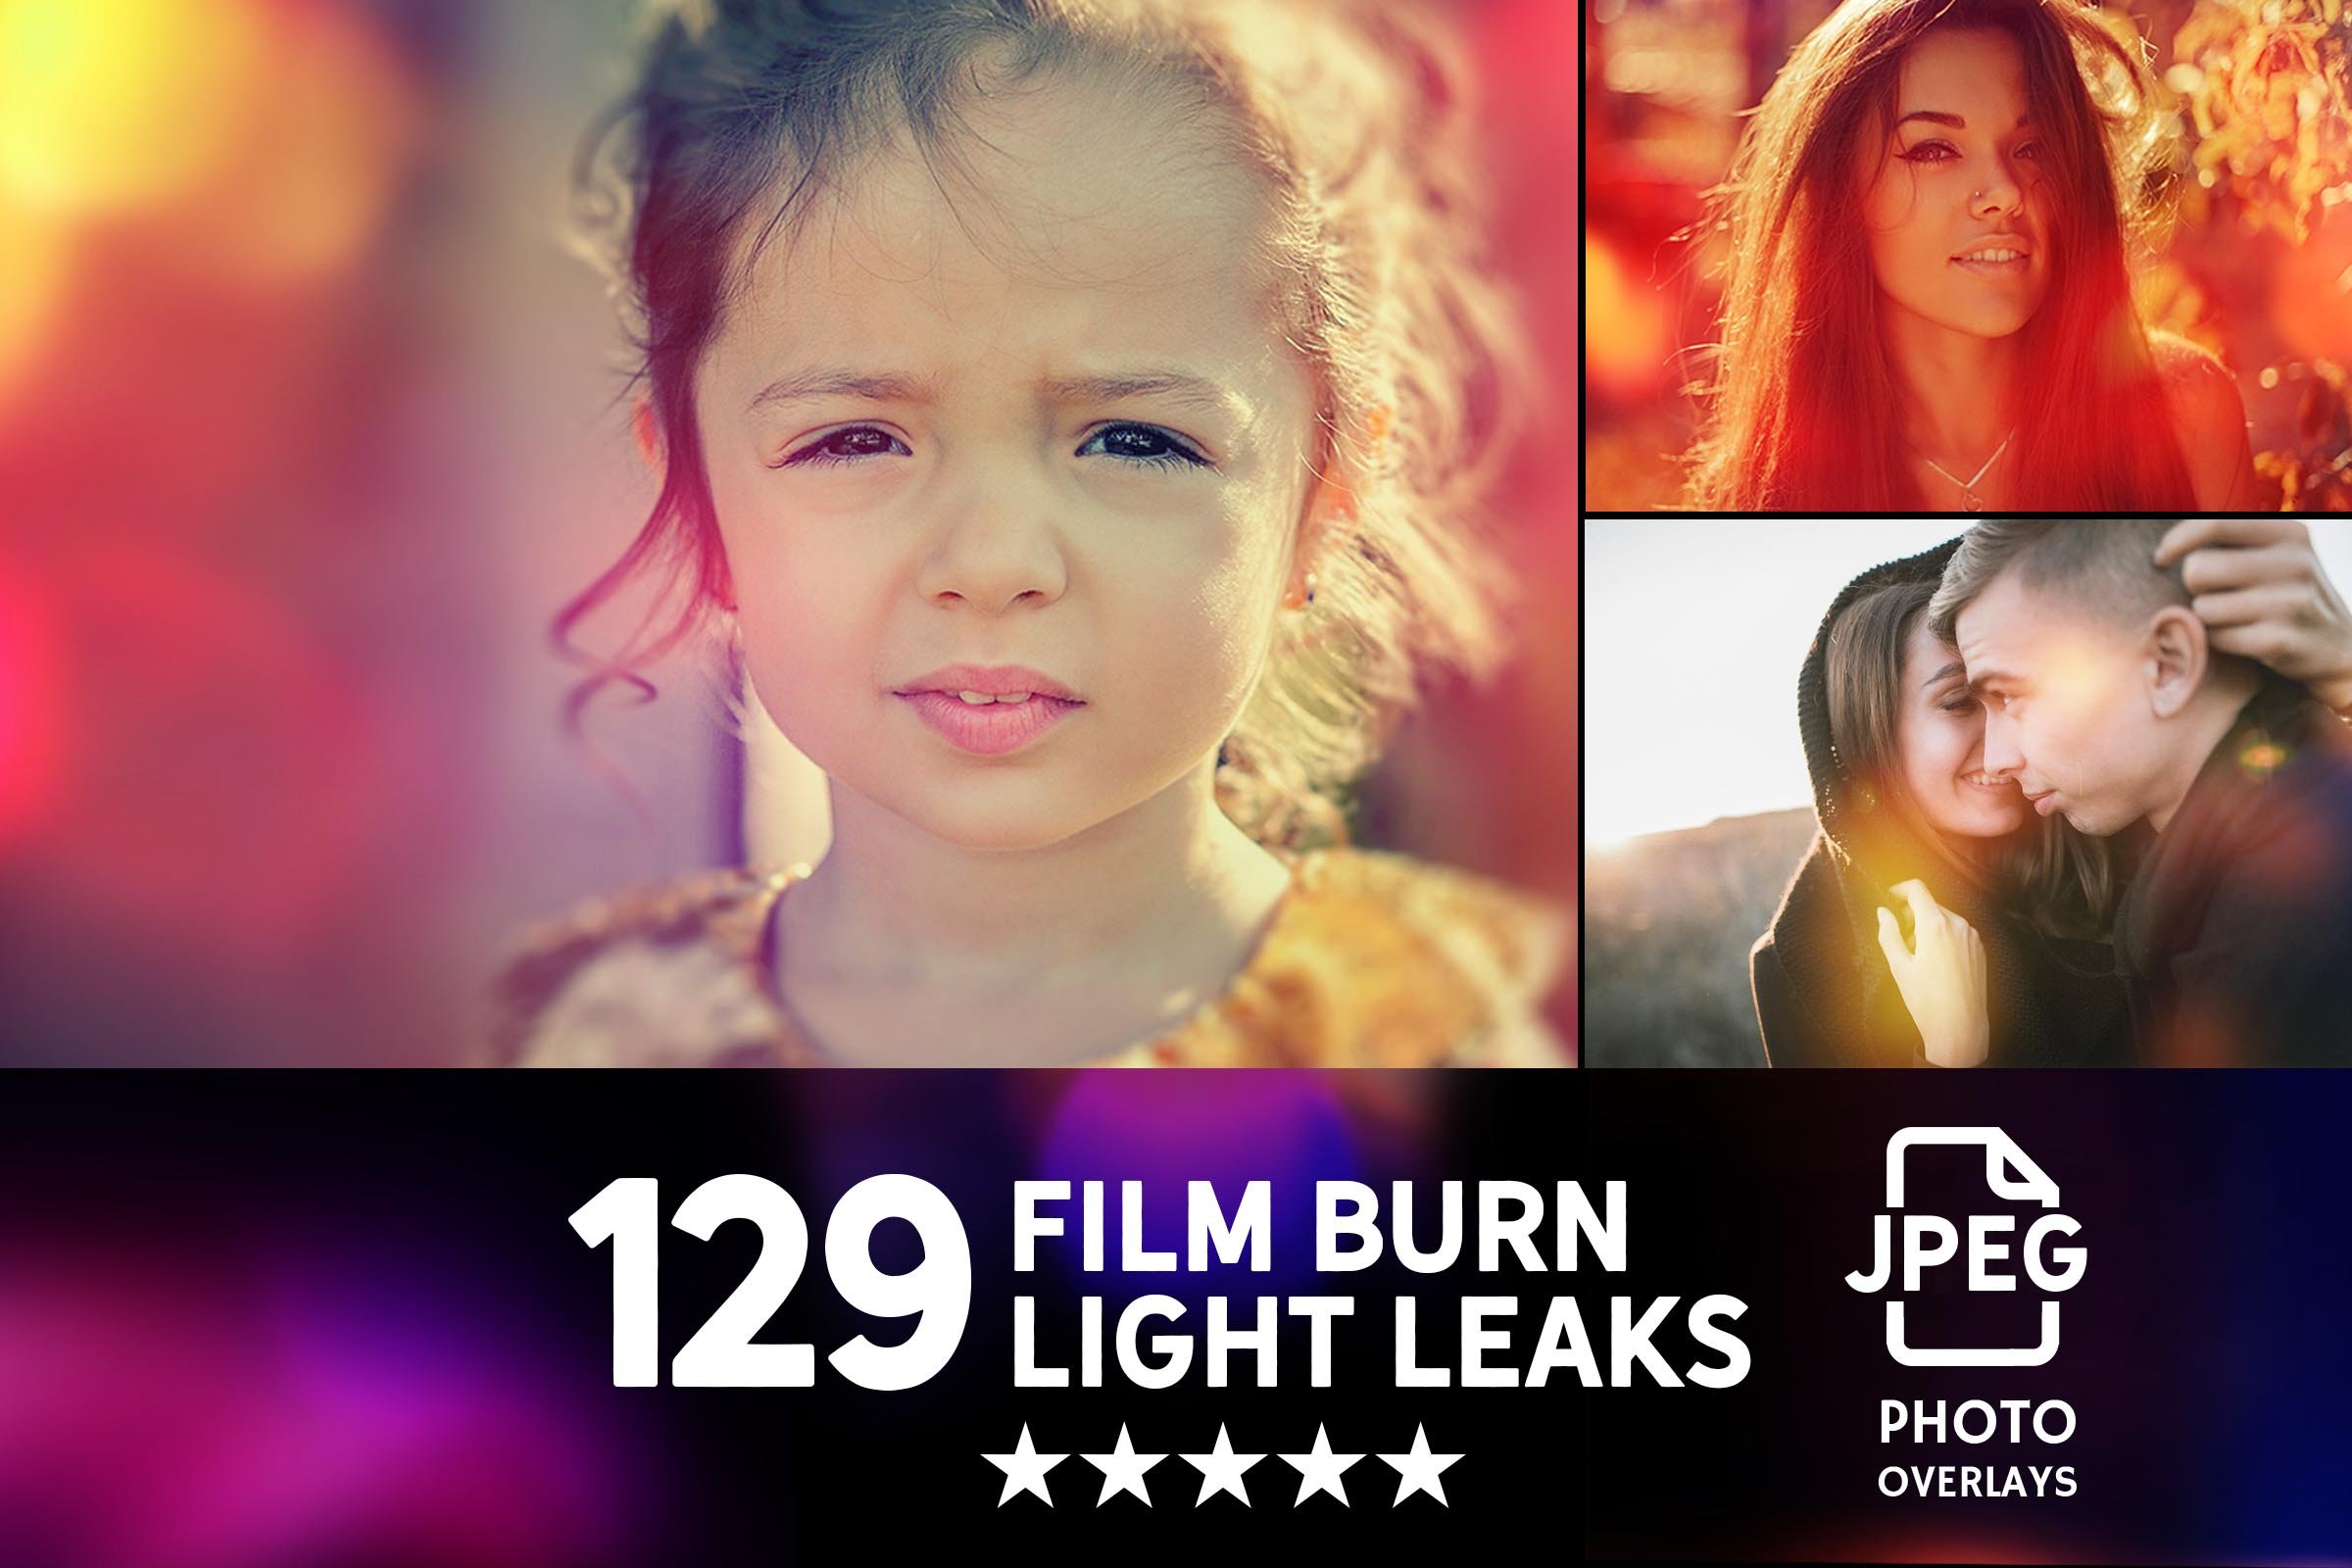 024. 129 film burn light leaks photo overlays 33